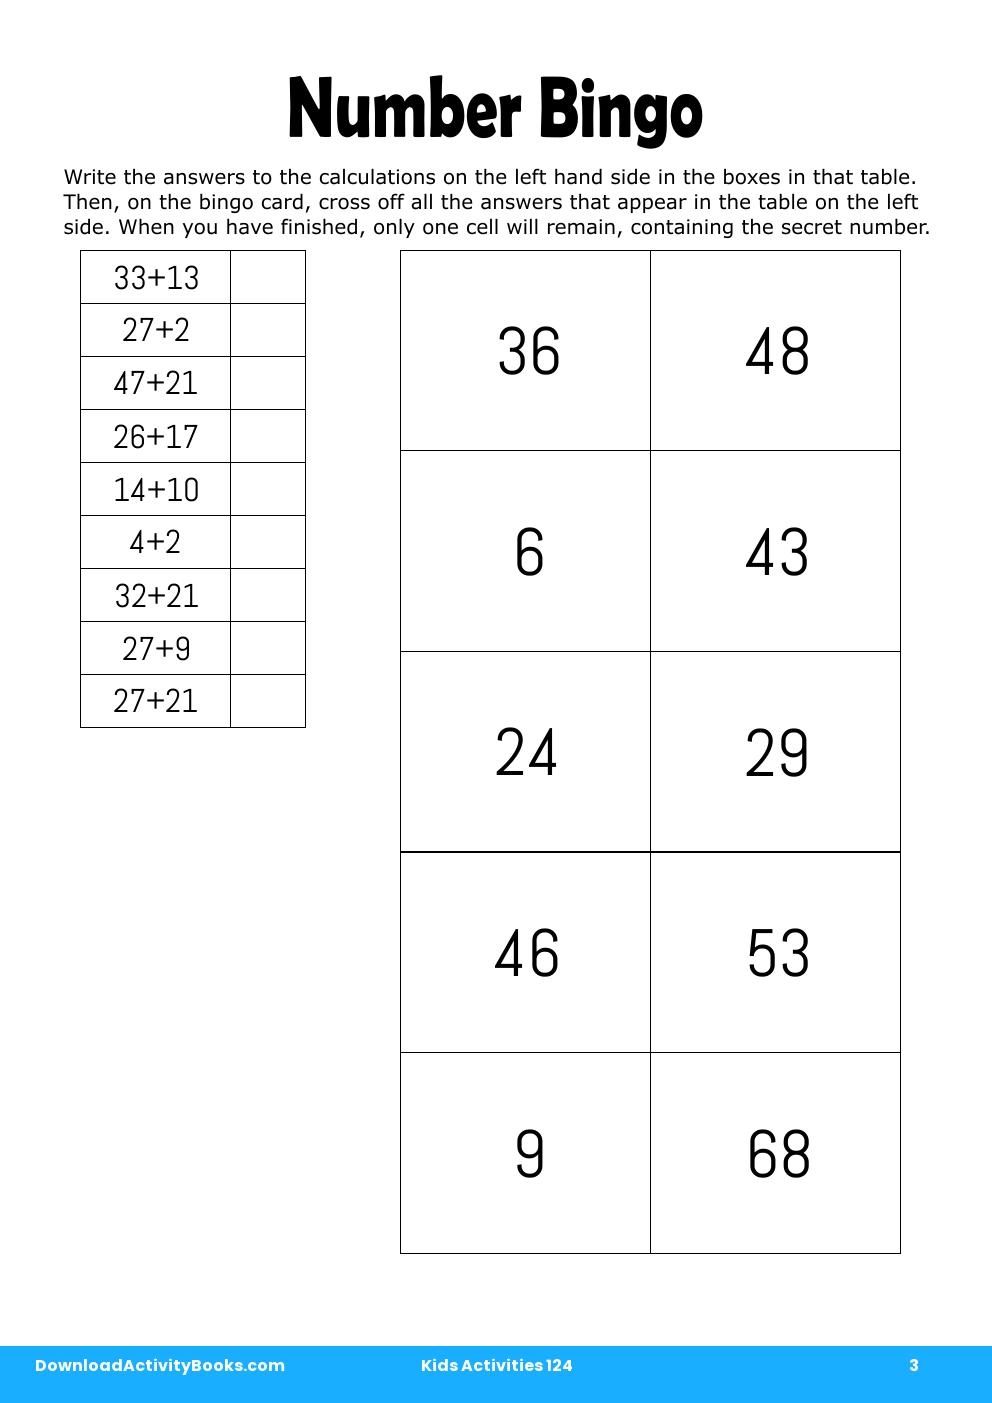 Number Bingo in Kids Activities 124